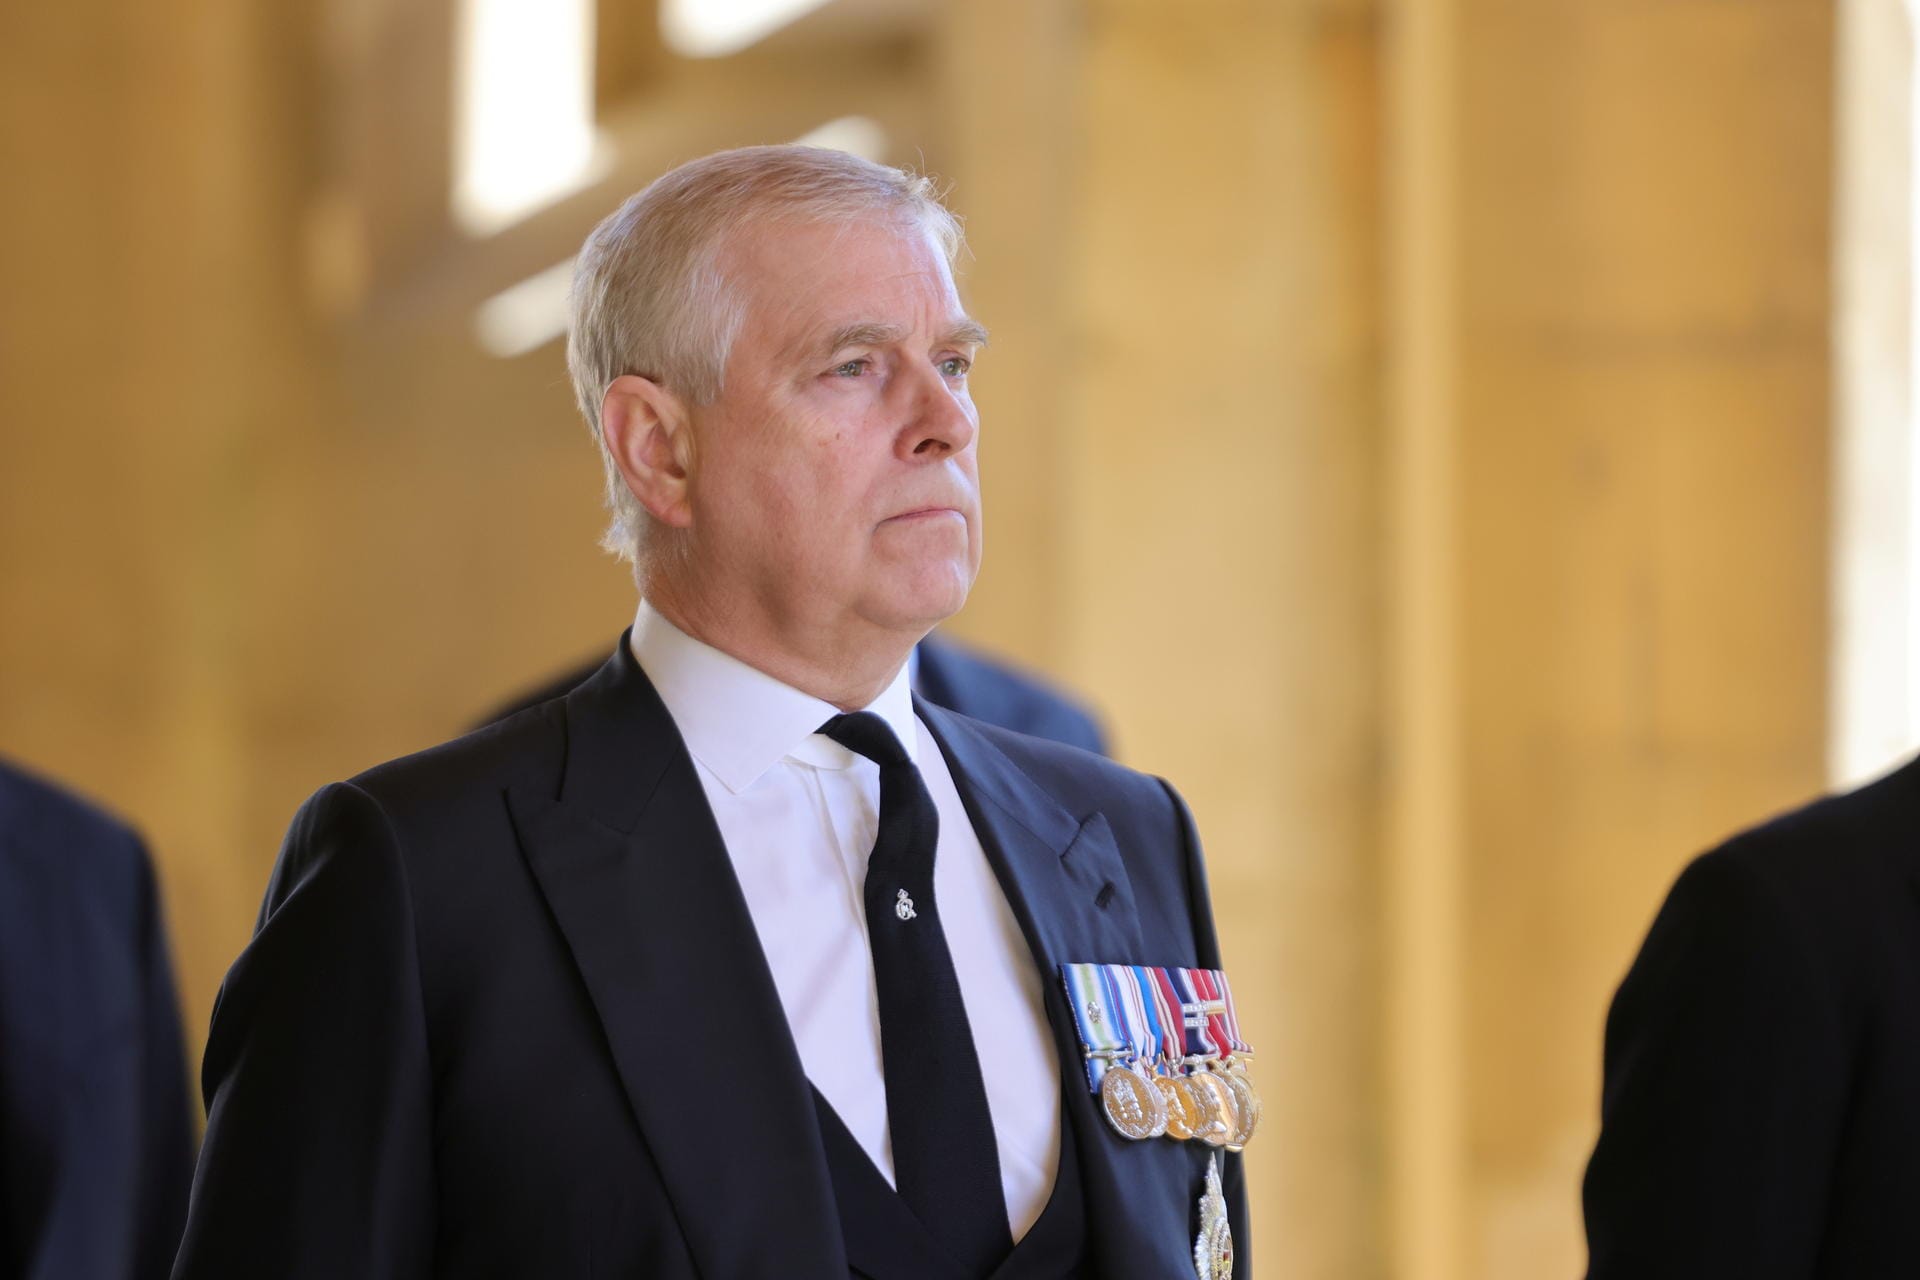 Prinz Andrew hatte sich gewünscht, zur Trauerfeier seines Vaters in Uniform kommen zu dürfen. Das hatte ihm die Queen verwehrt. Stattdessen trug niemand seine Uniform.